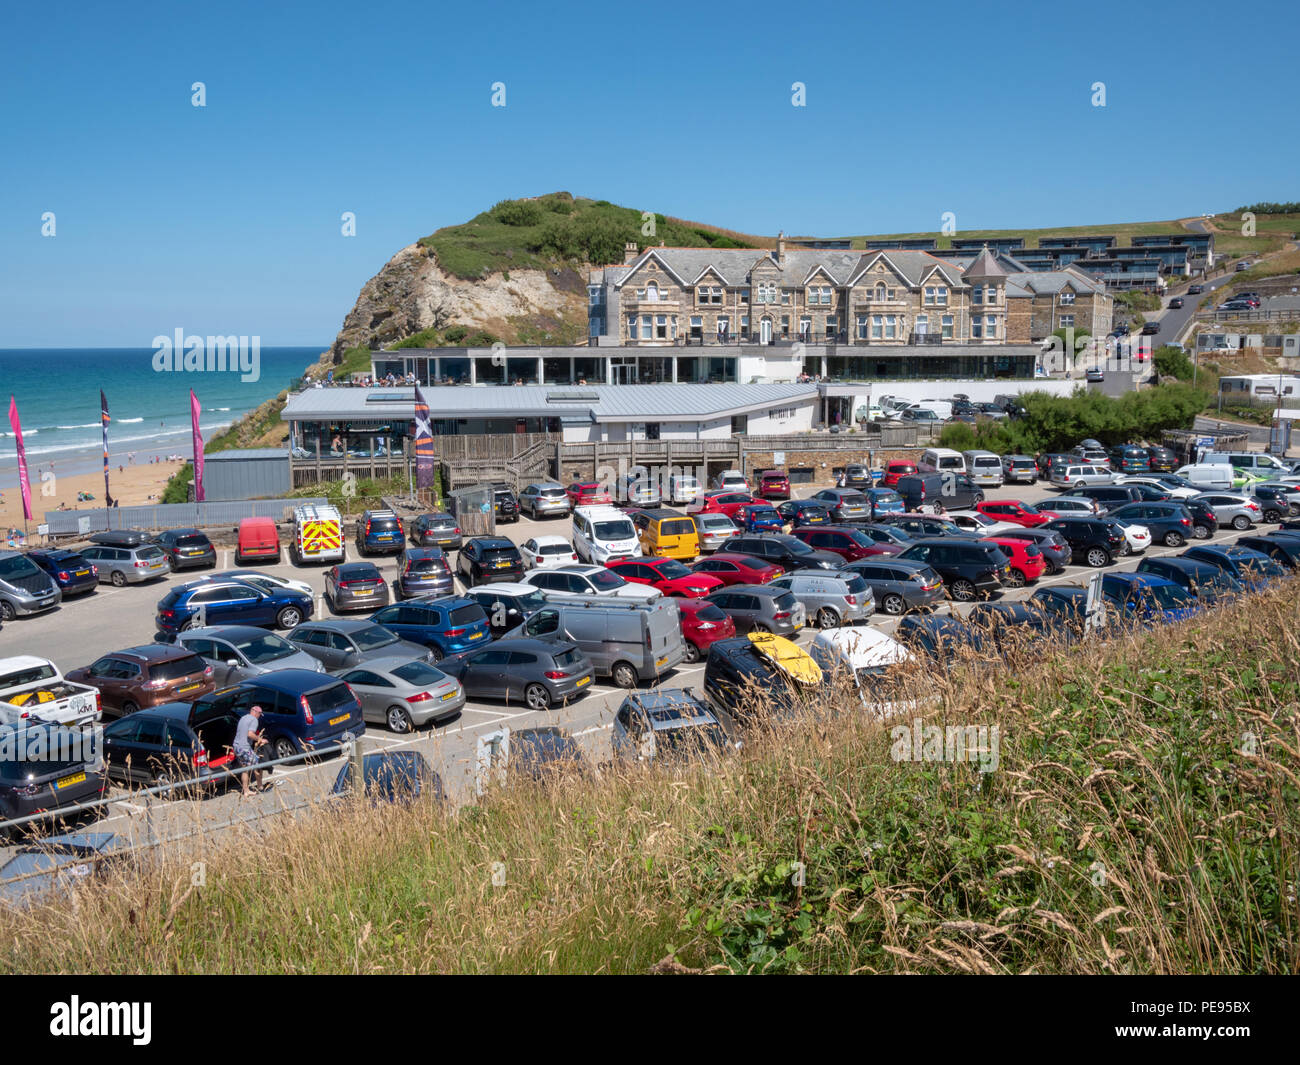 Acondicionamiento , zona ruidosa y concurrida playa de aparcamientos en Watergate Bay cerca de Newquay Cornwall UK en el caluroso verano de 2018 Foto de stock